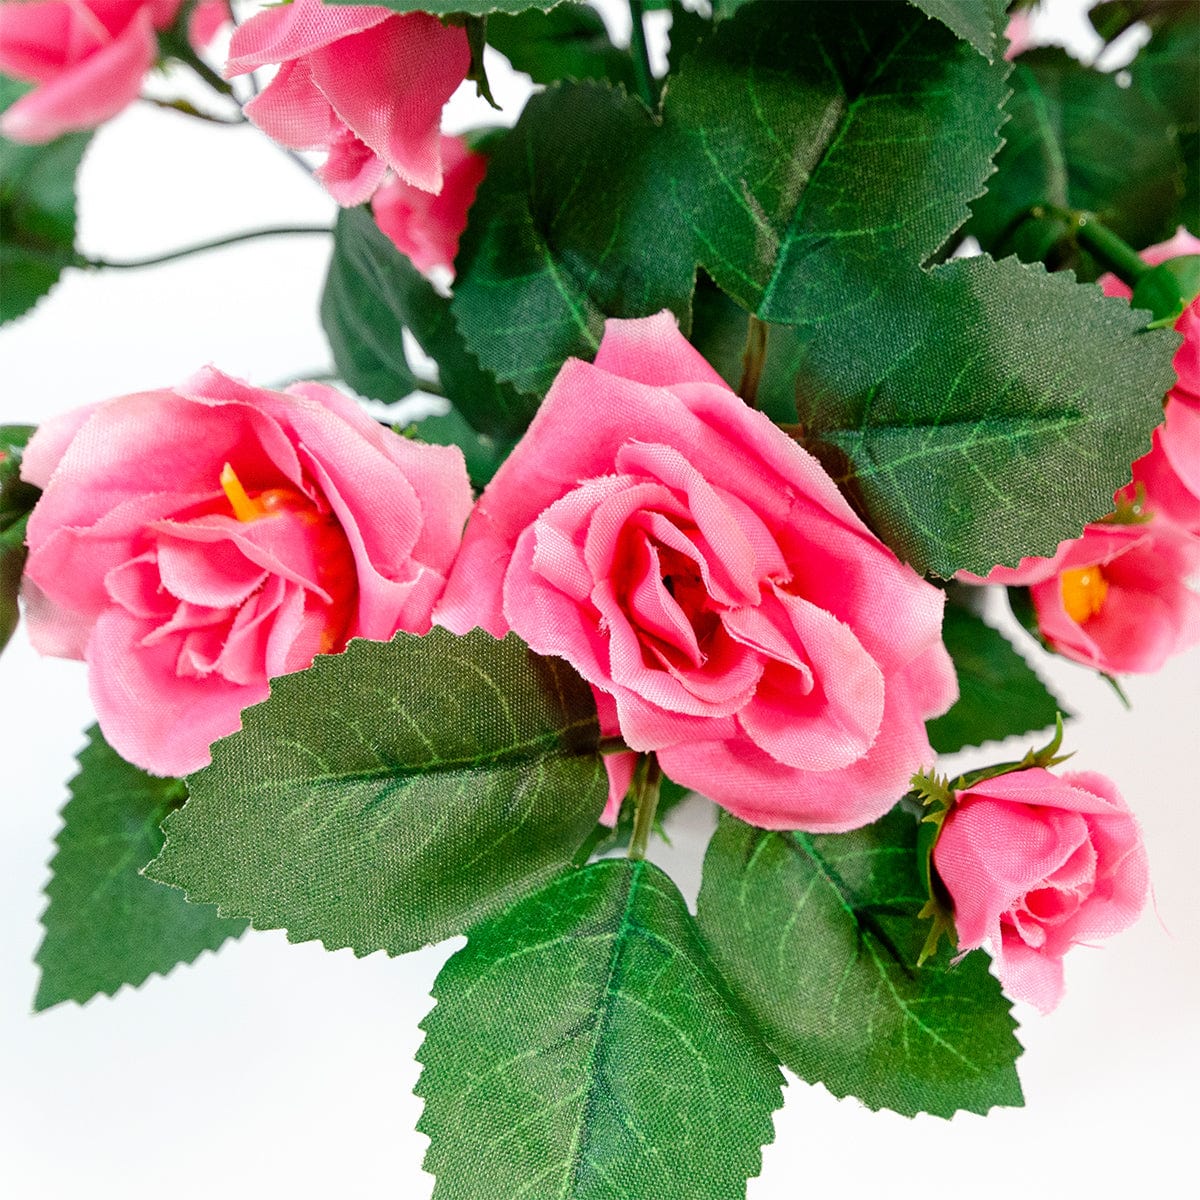 Mini pink rose bush